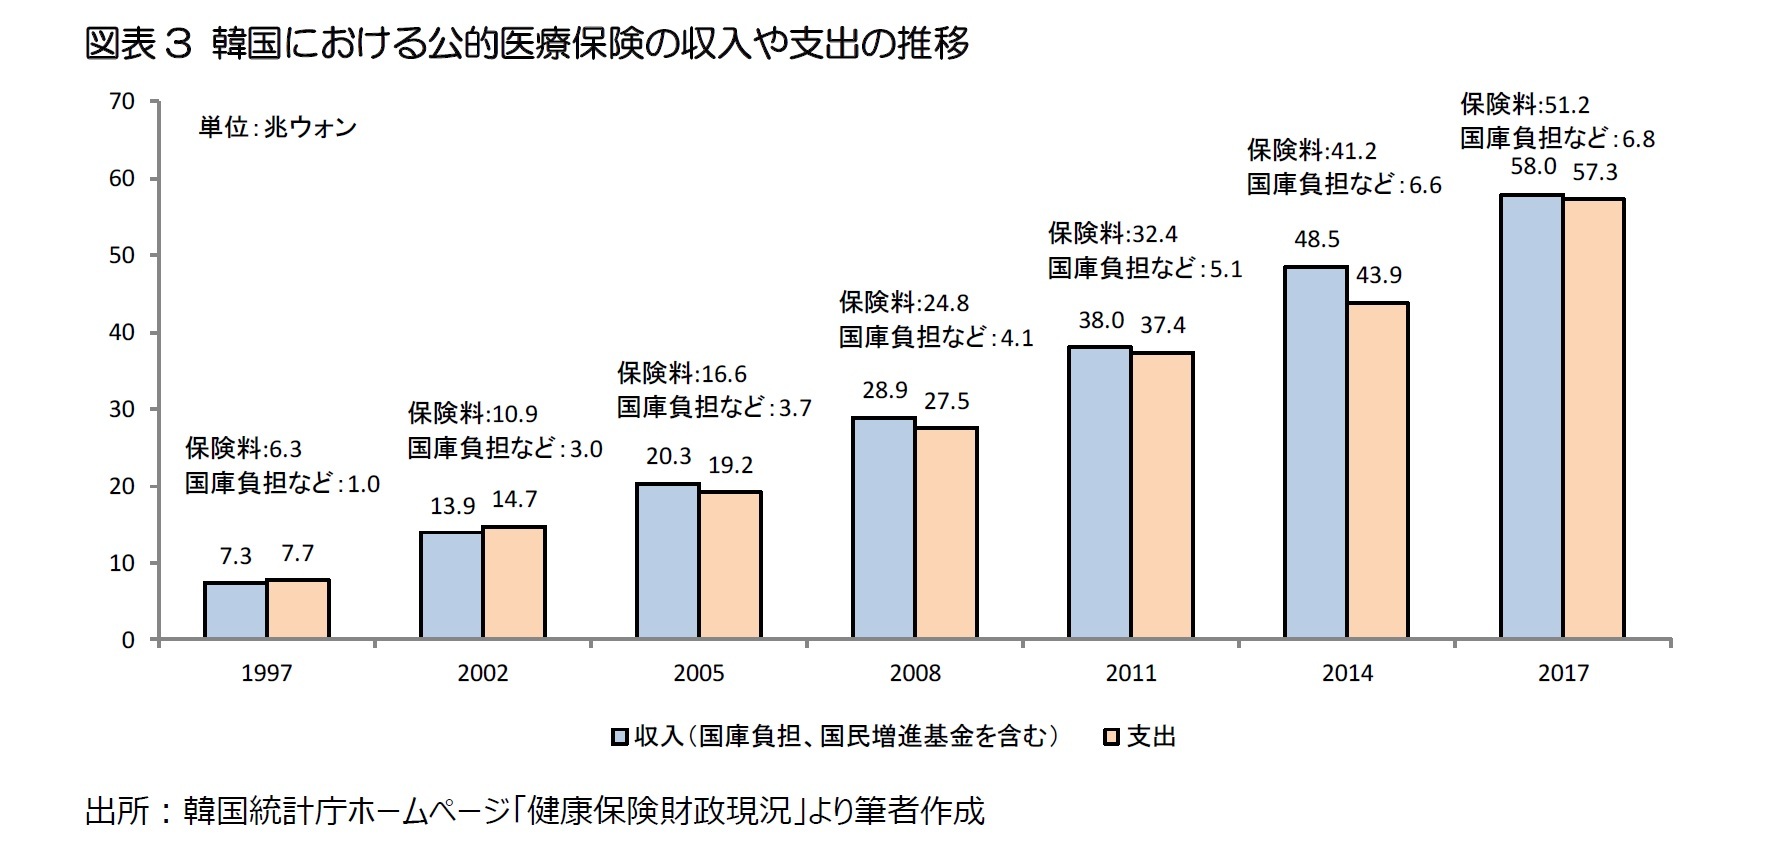 図表3 韓国における公的医療保険の収入や支出の推移